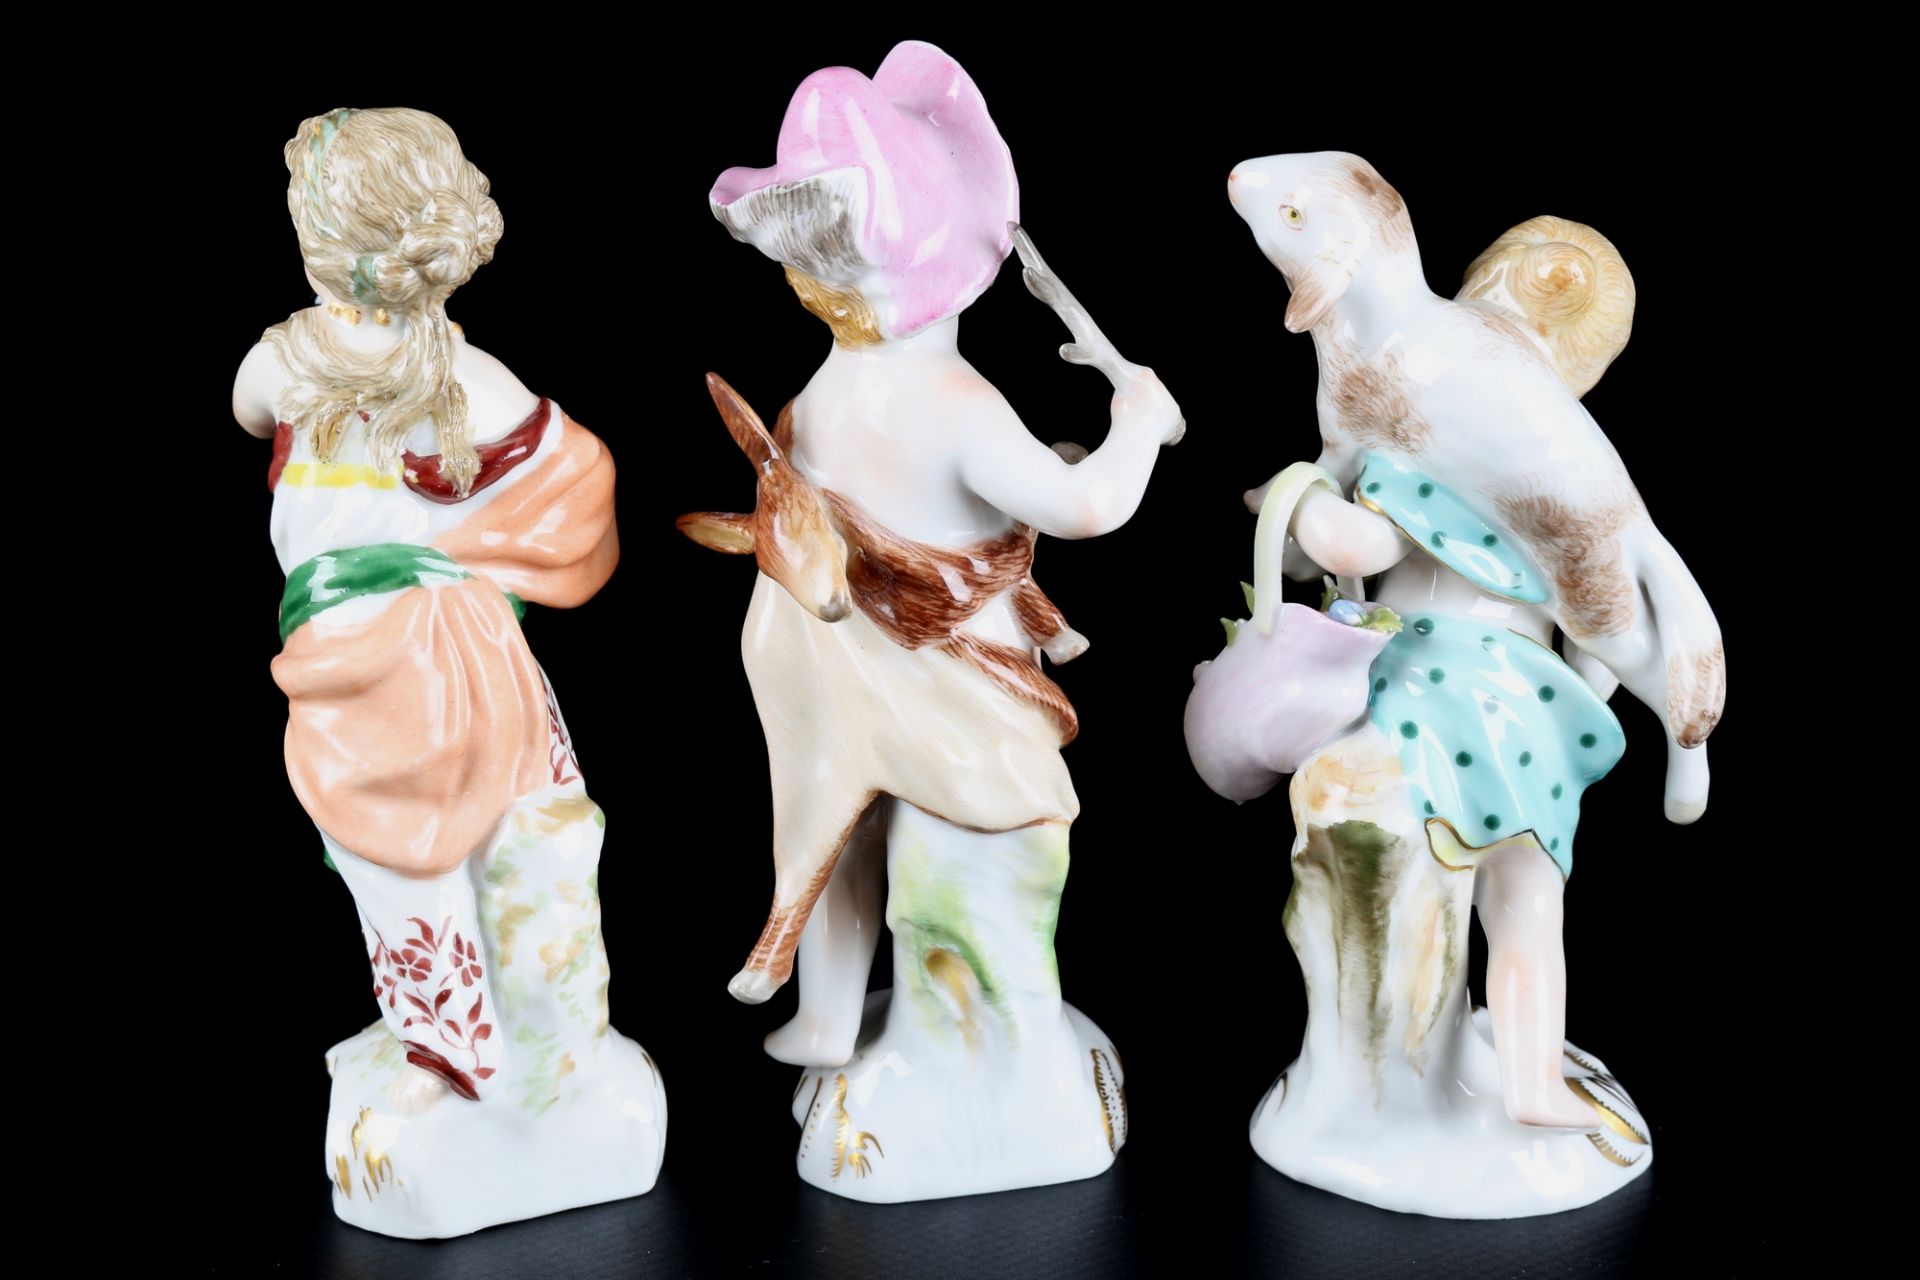 KPM Berlin 3 Kinderfiguren, porcelain figures, - Image 3 of 5